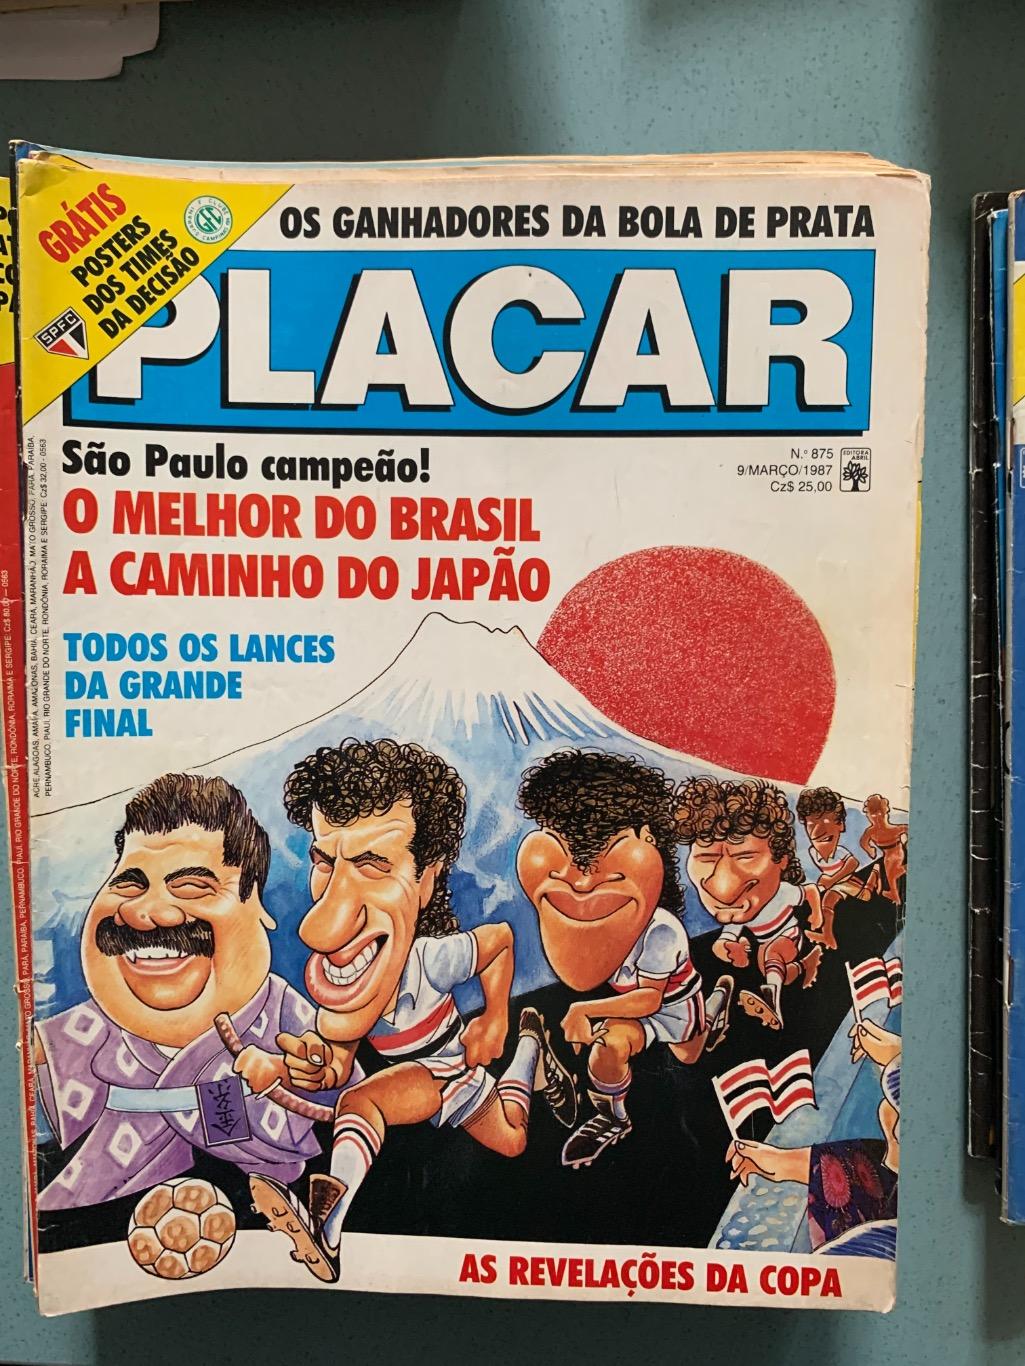 Placar Бразилия на выбор 1